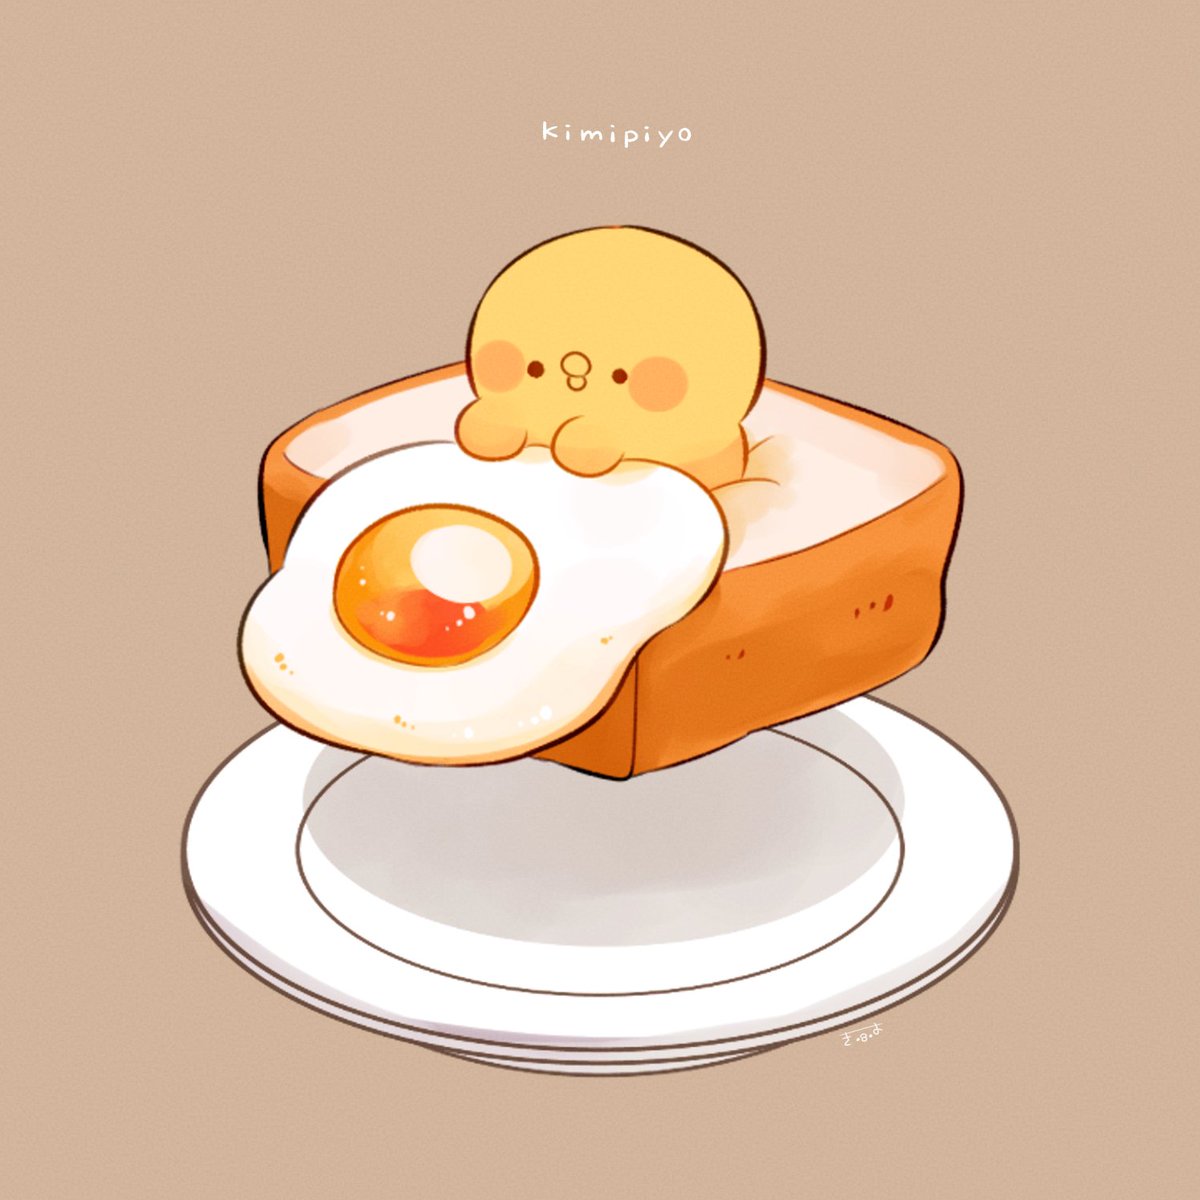 food bird egg (food) fried egg chick no humans simple background  illustration images